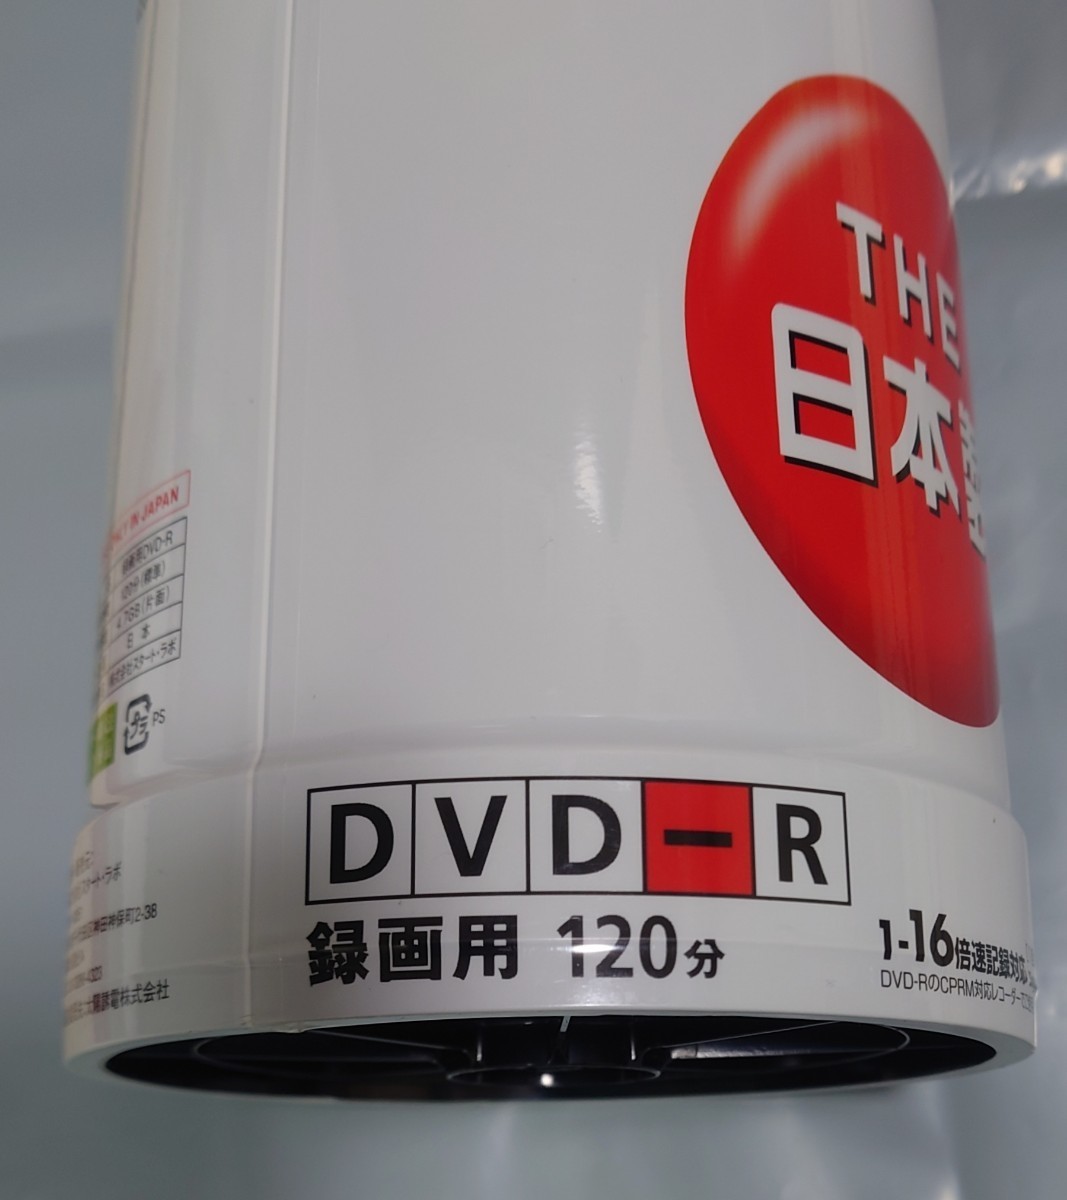 【送料込/匿名】太陽誘電 That's DVD-R デジタル放送録画用 CPRM対応 100枚入り未開封 日本製 DR-C12STY100BN スタートラボ スタート・ラボ_画像10